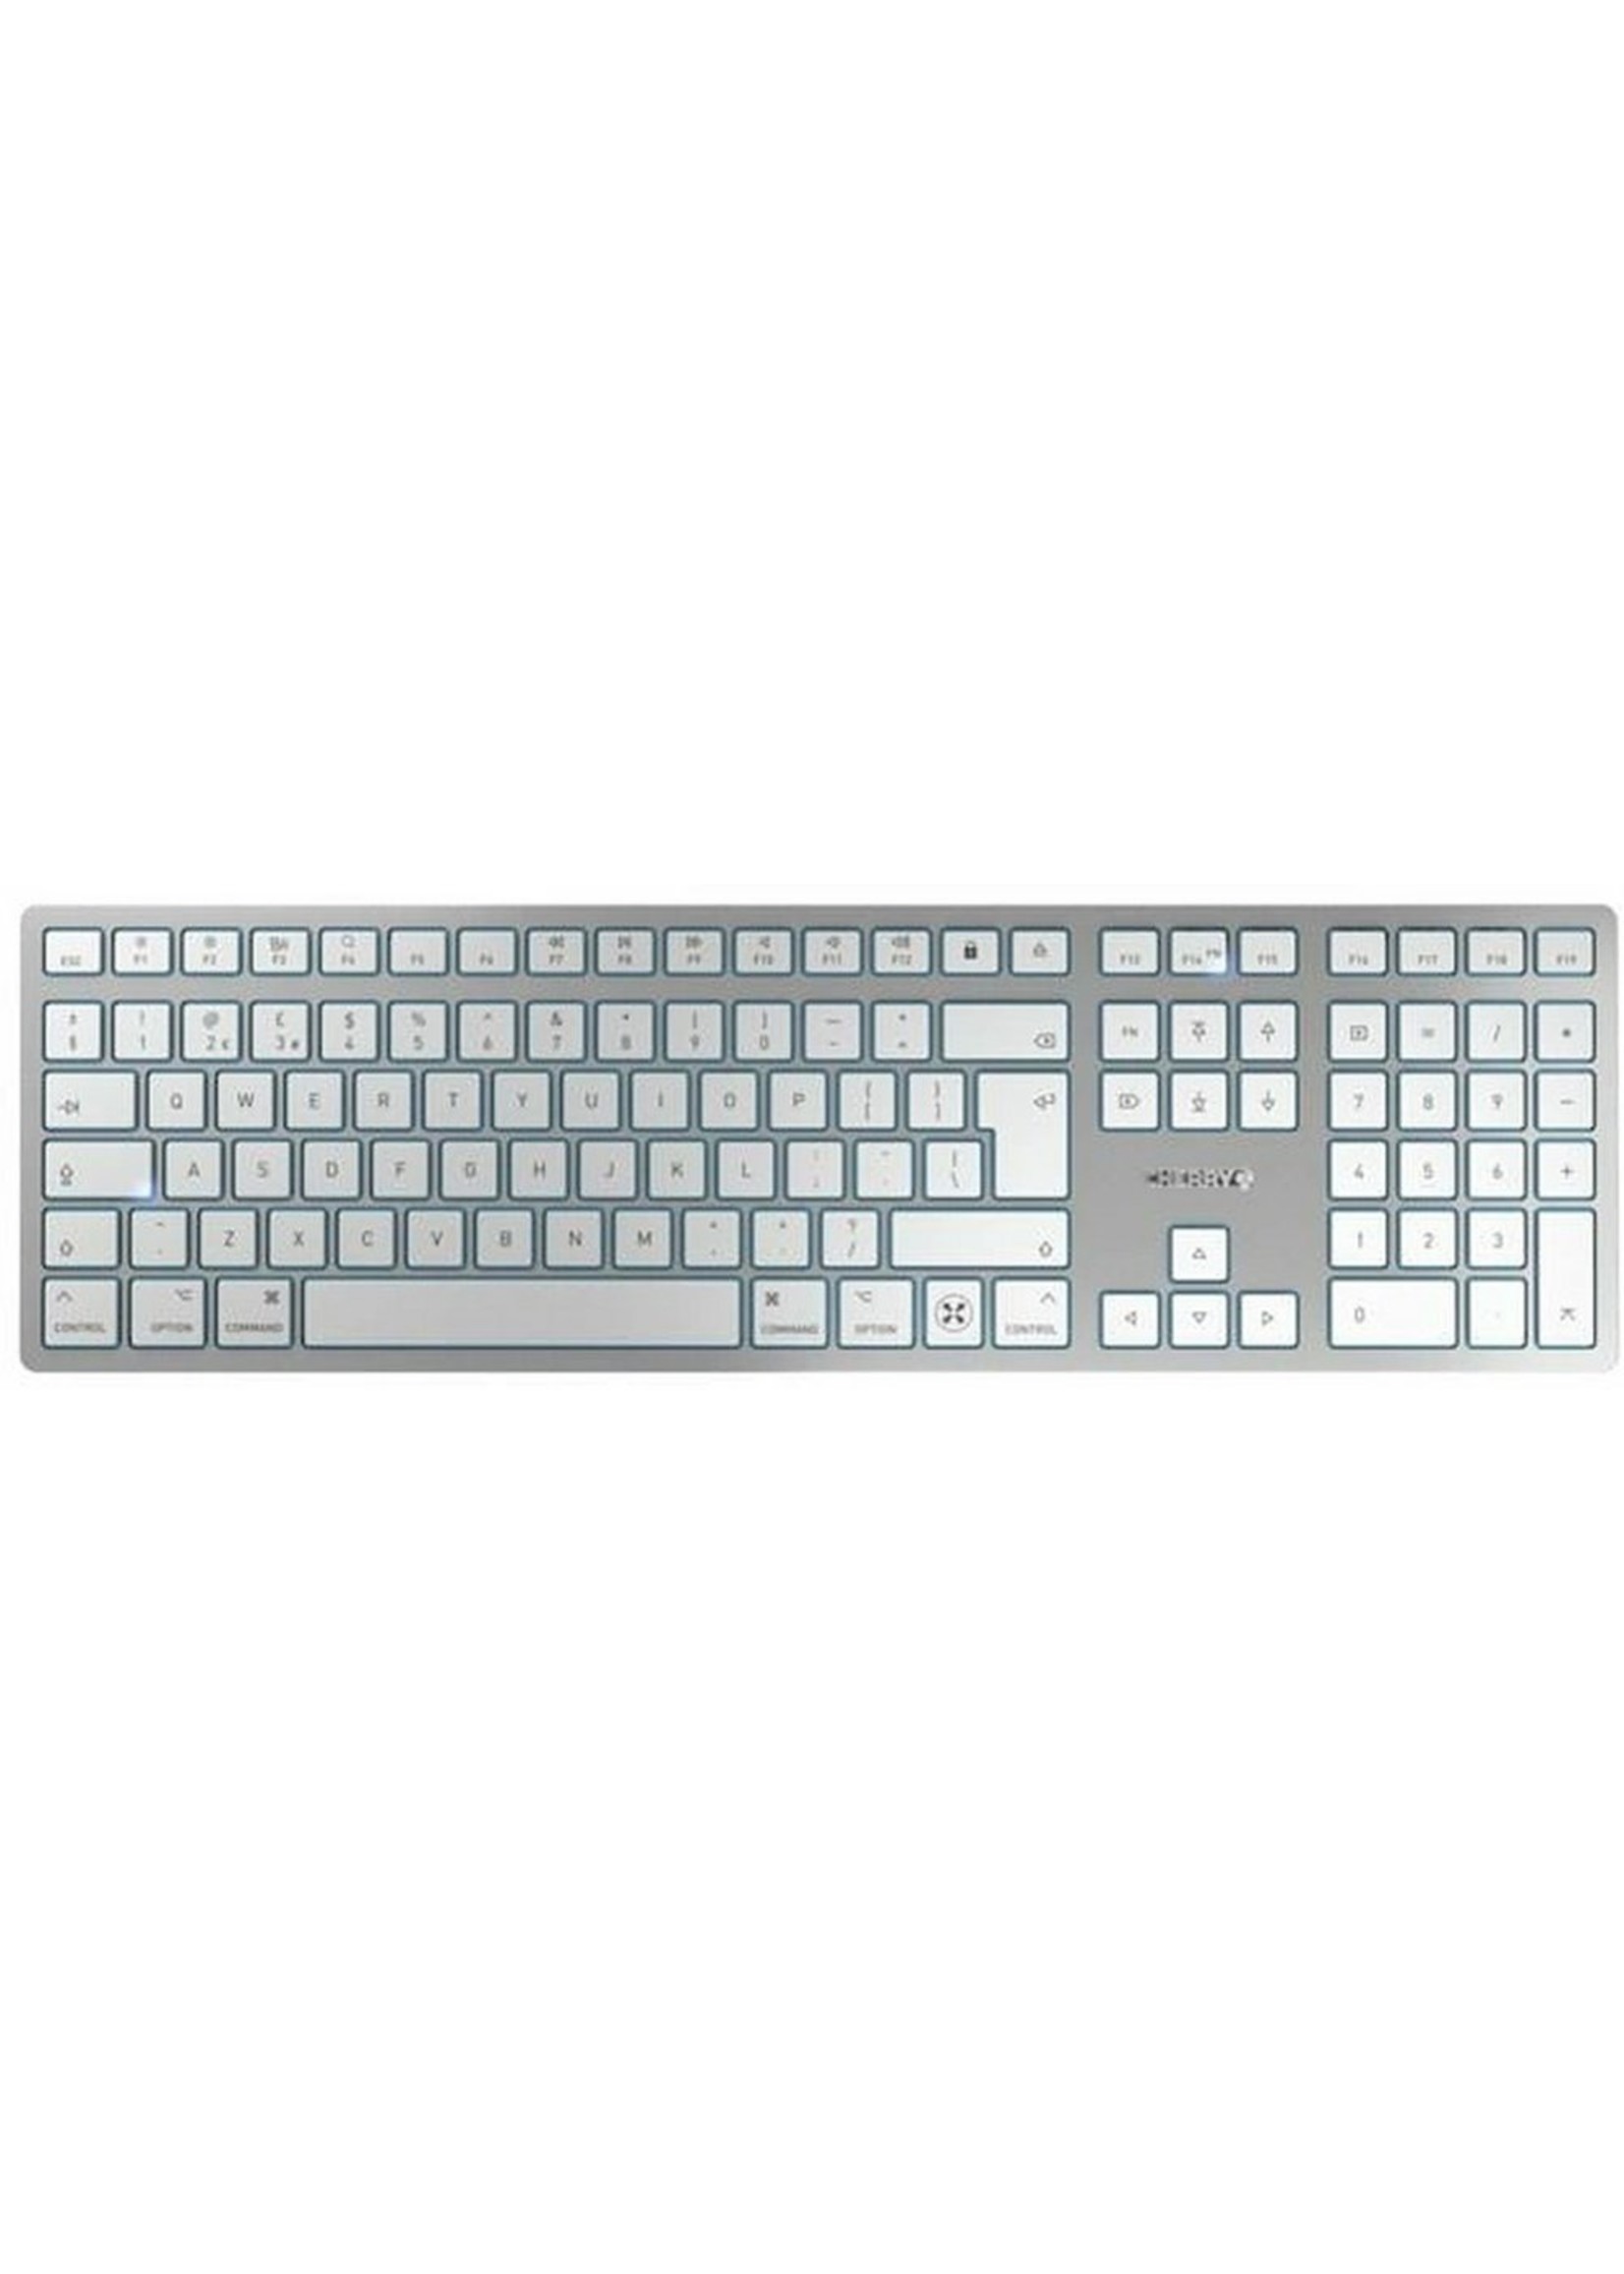 Cherry KW 9100 SLIM FOR MAC Keyboard wireless